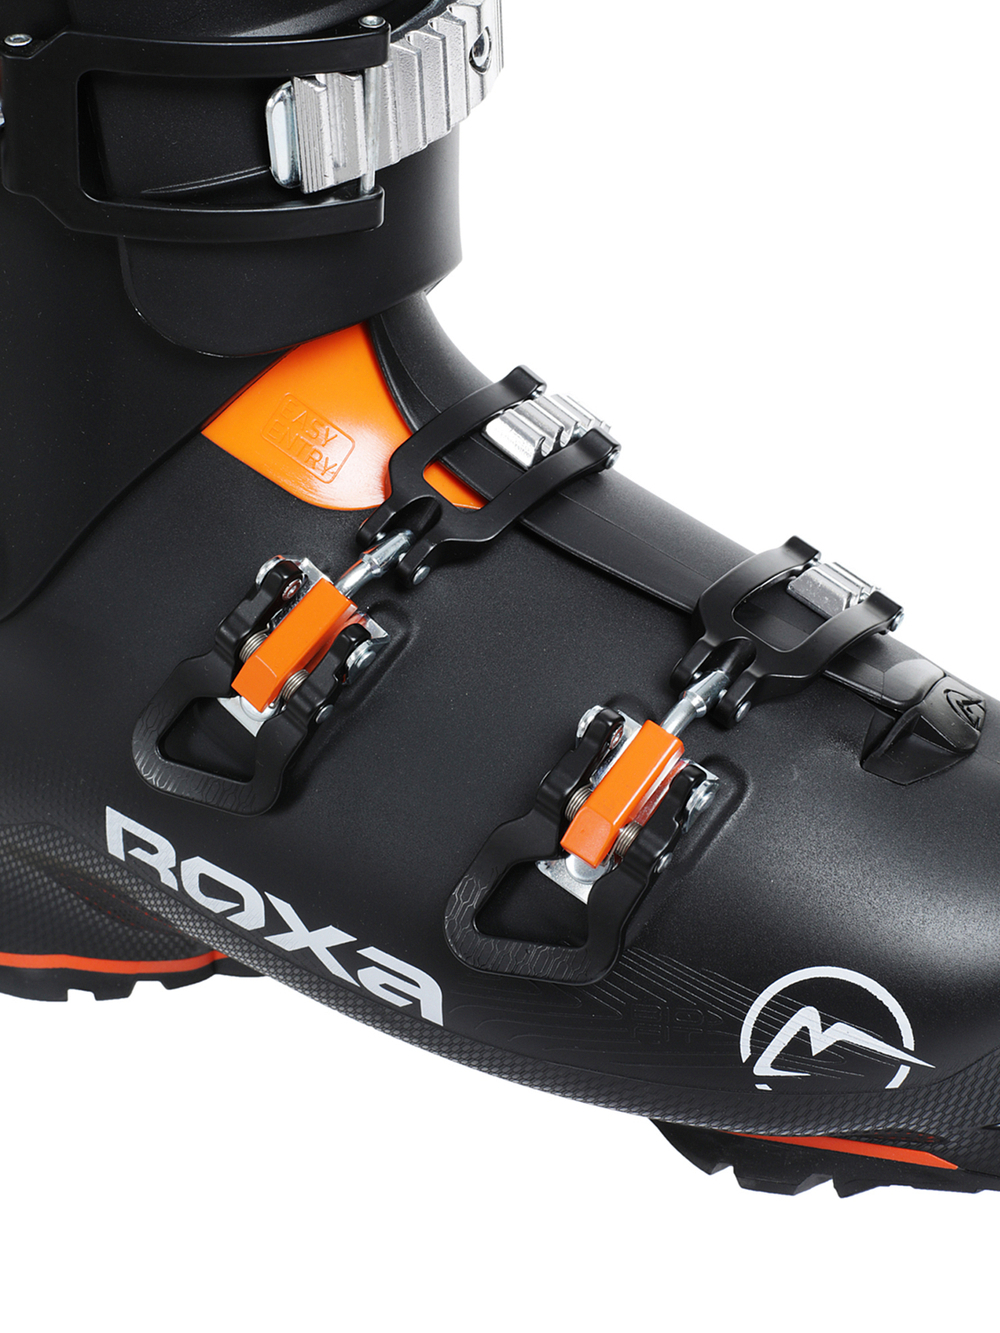 Горнолыжные ботинки ROXA Rfit Hike 90 Gw Black/Orange (см:29,5)